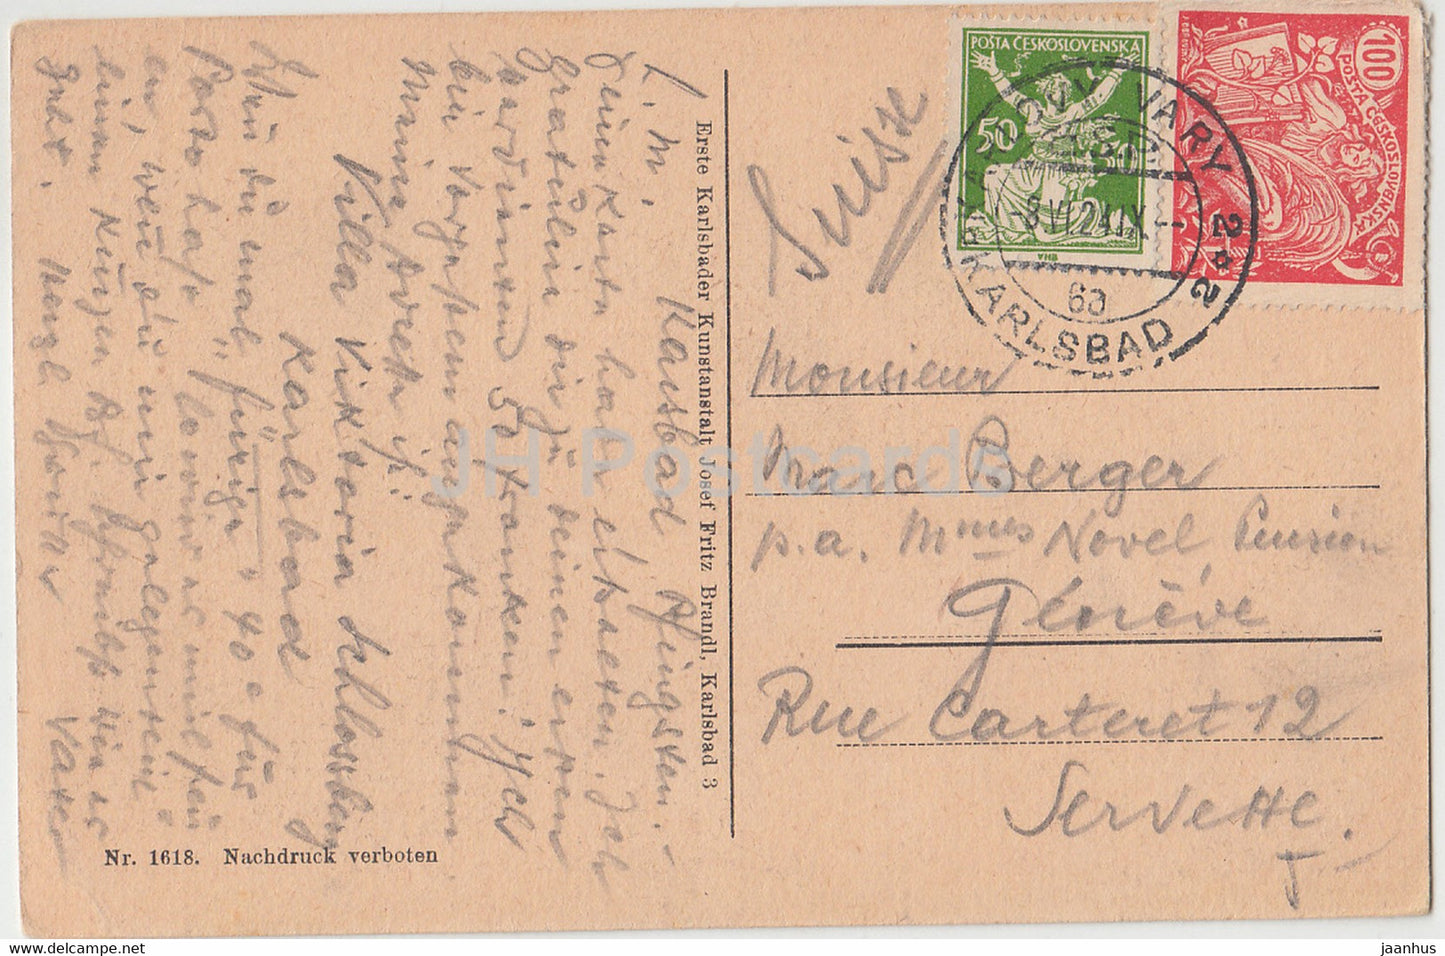 Karlovy Vary - Karlsbad - Alte u Neue Wiese - 1618 - carte postale ancienne - 1924 - Tchécoslovaquie - République tchèque - utilisé